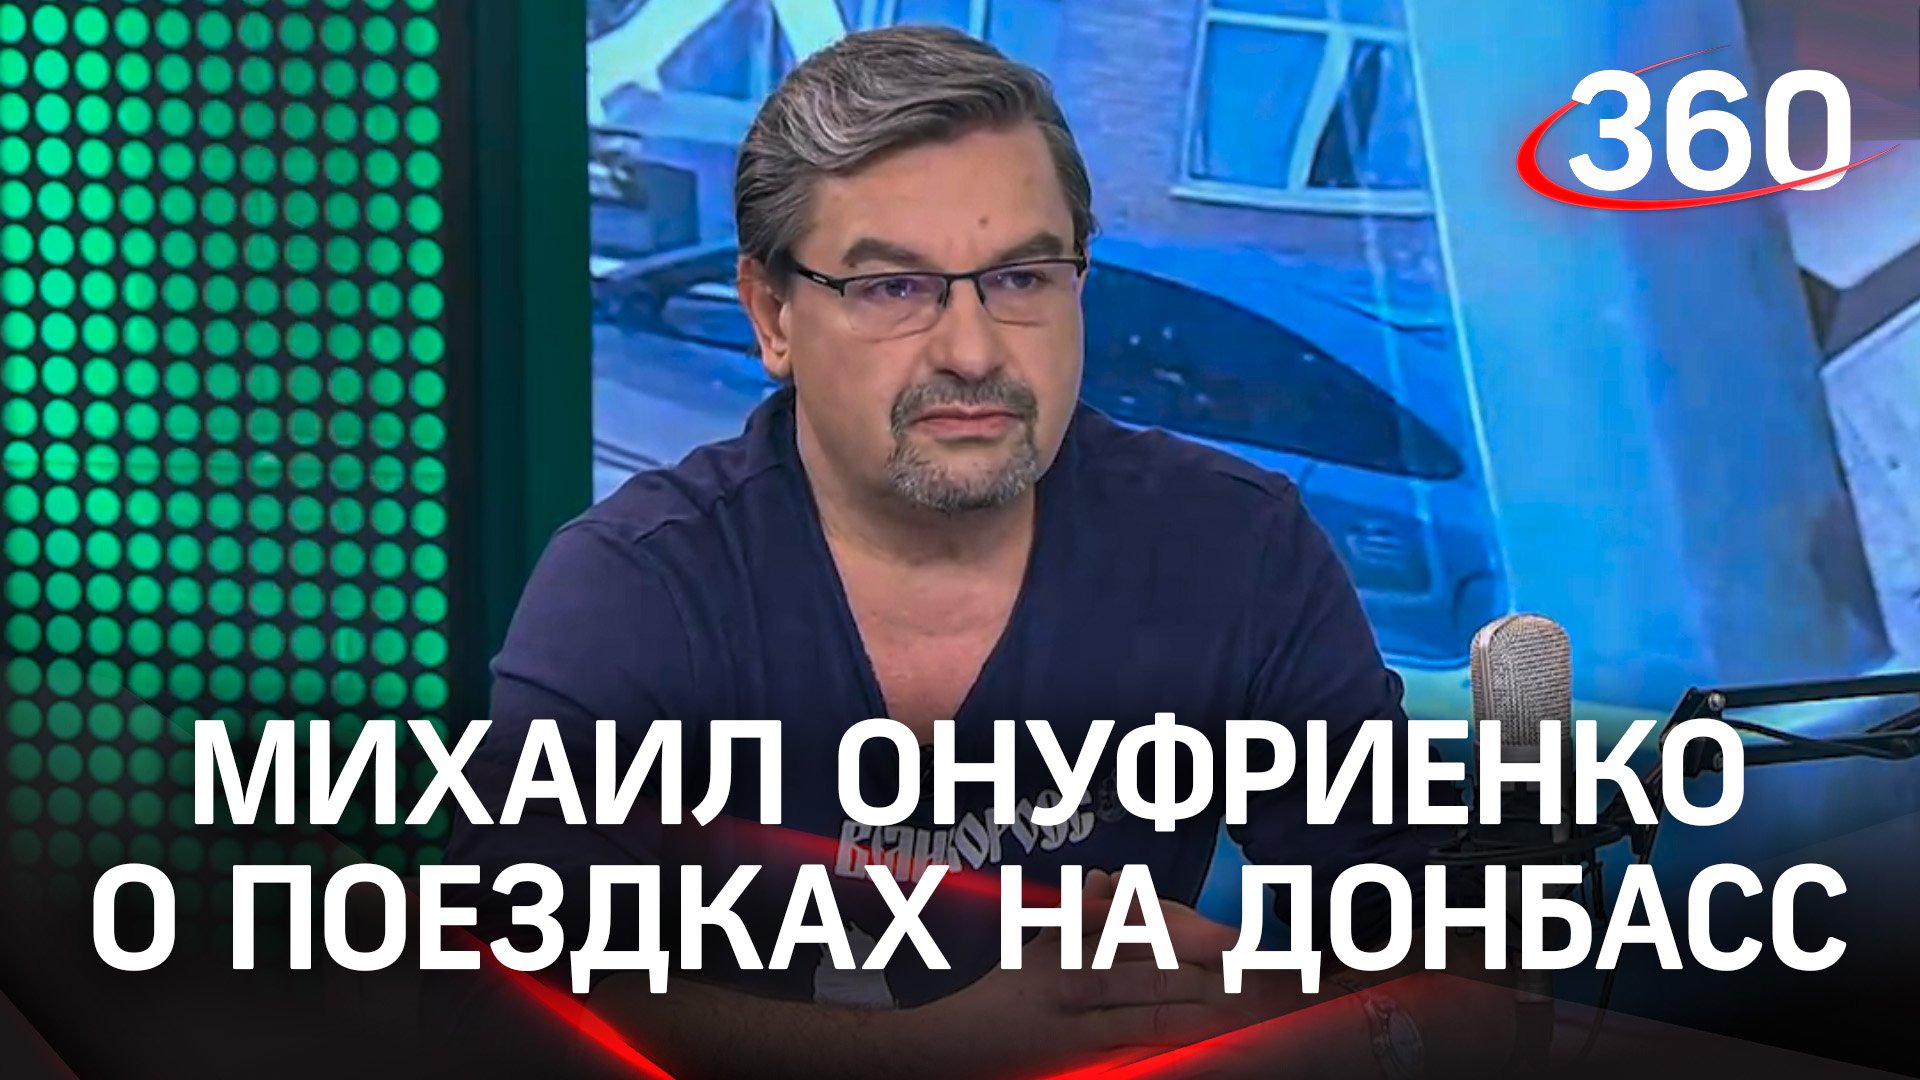 «Вернуться на танке» - что смотивировало политолога Михаила Онуфриенко поехать на Донбасс?